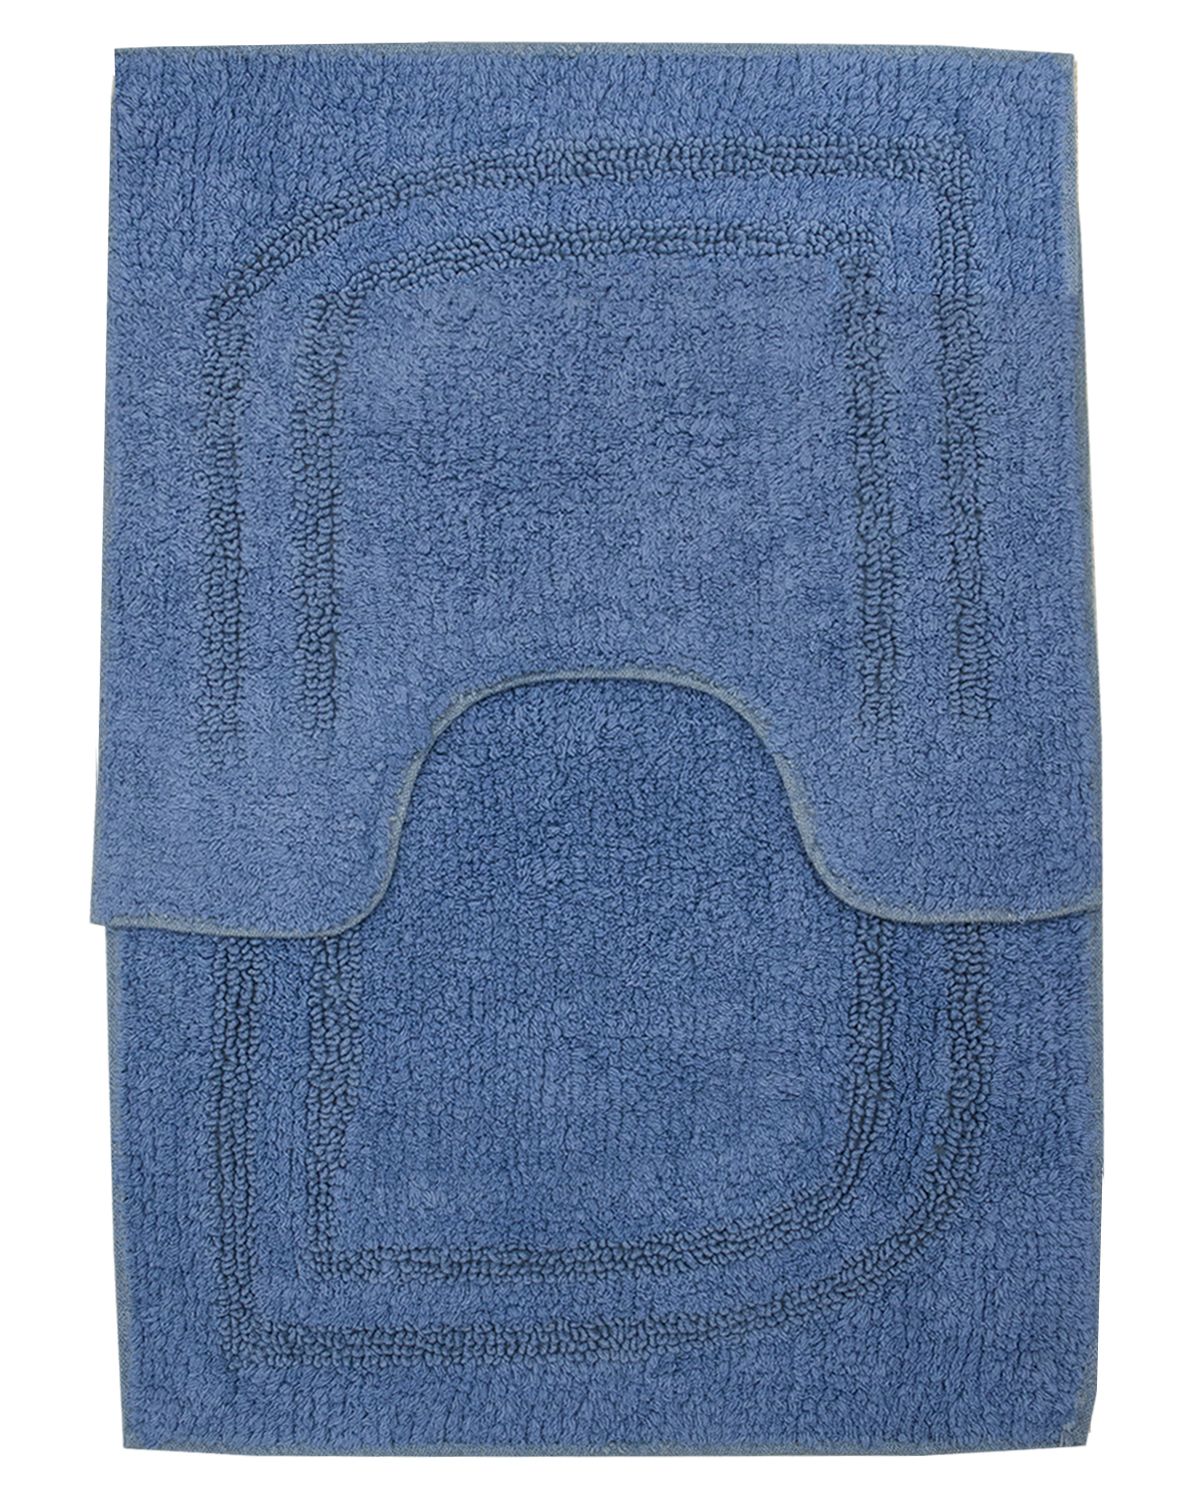 коврик для ванной 1200-44S голубой комплект 2 шт.